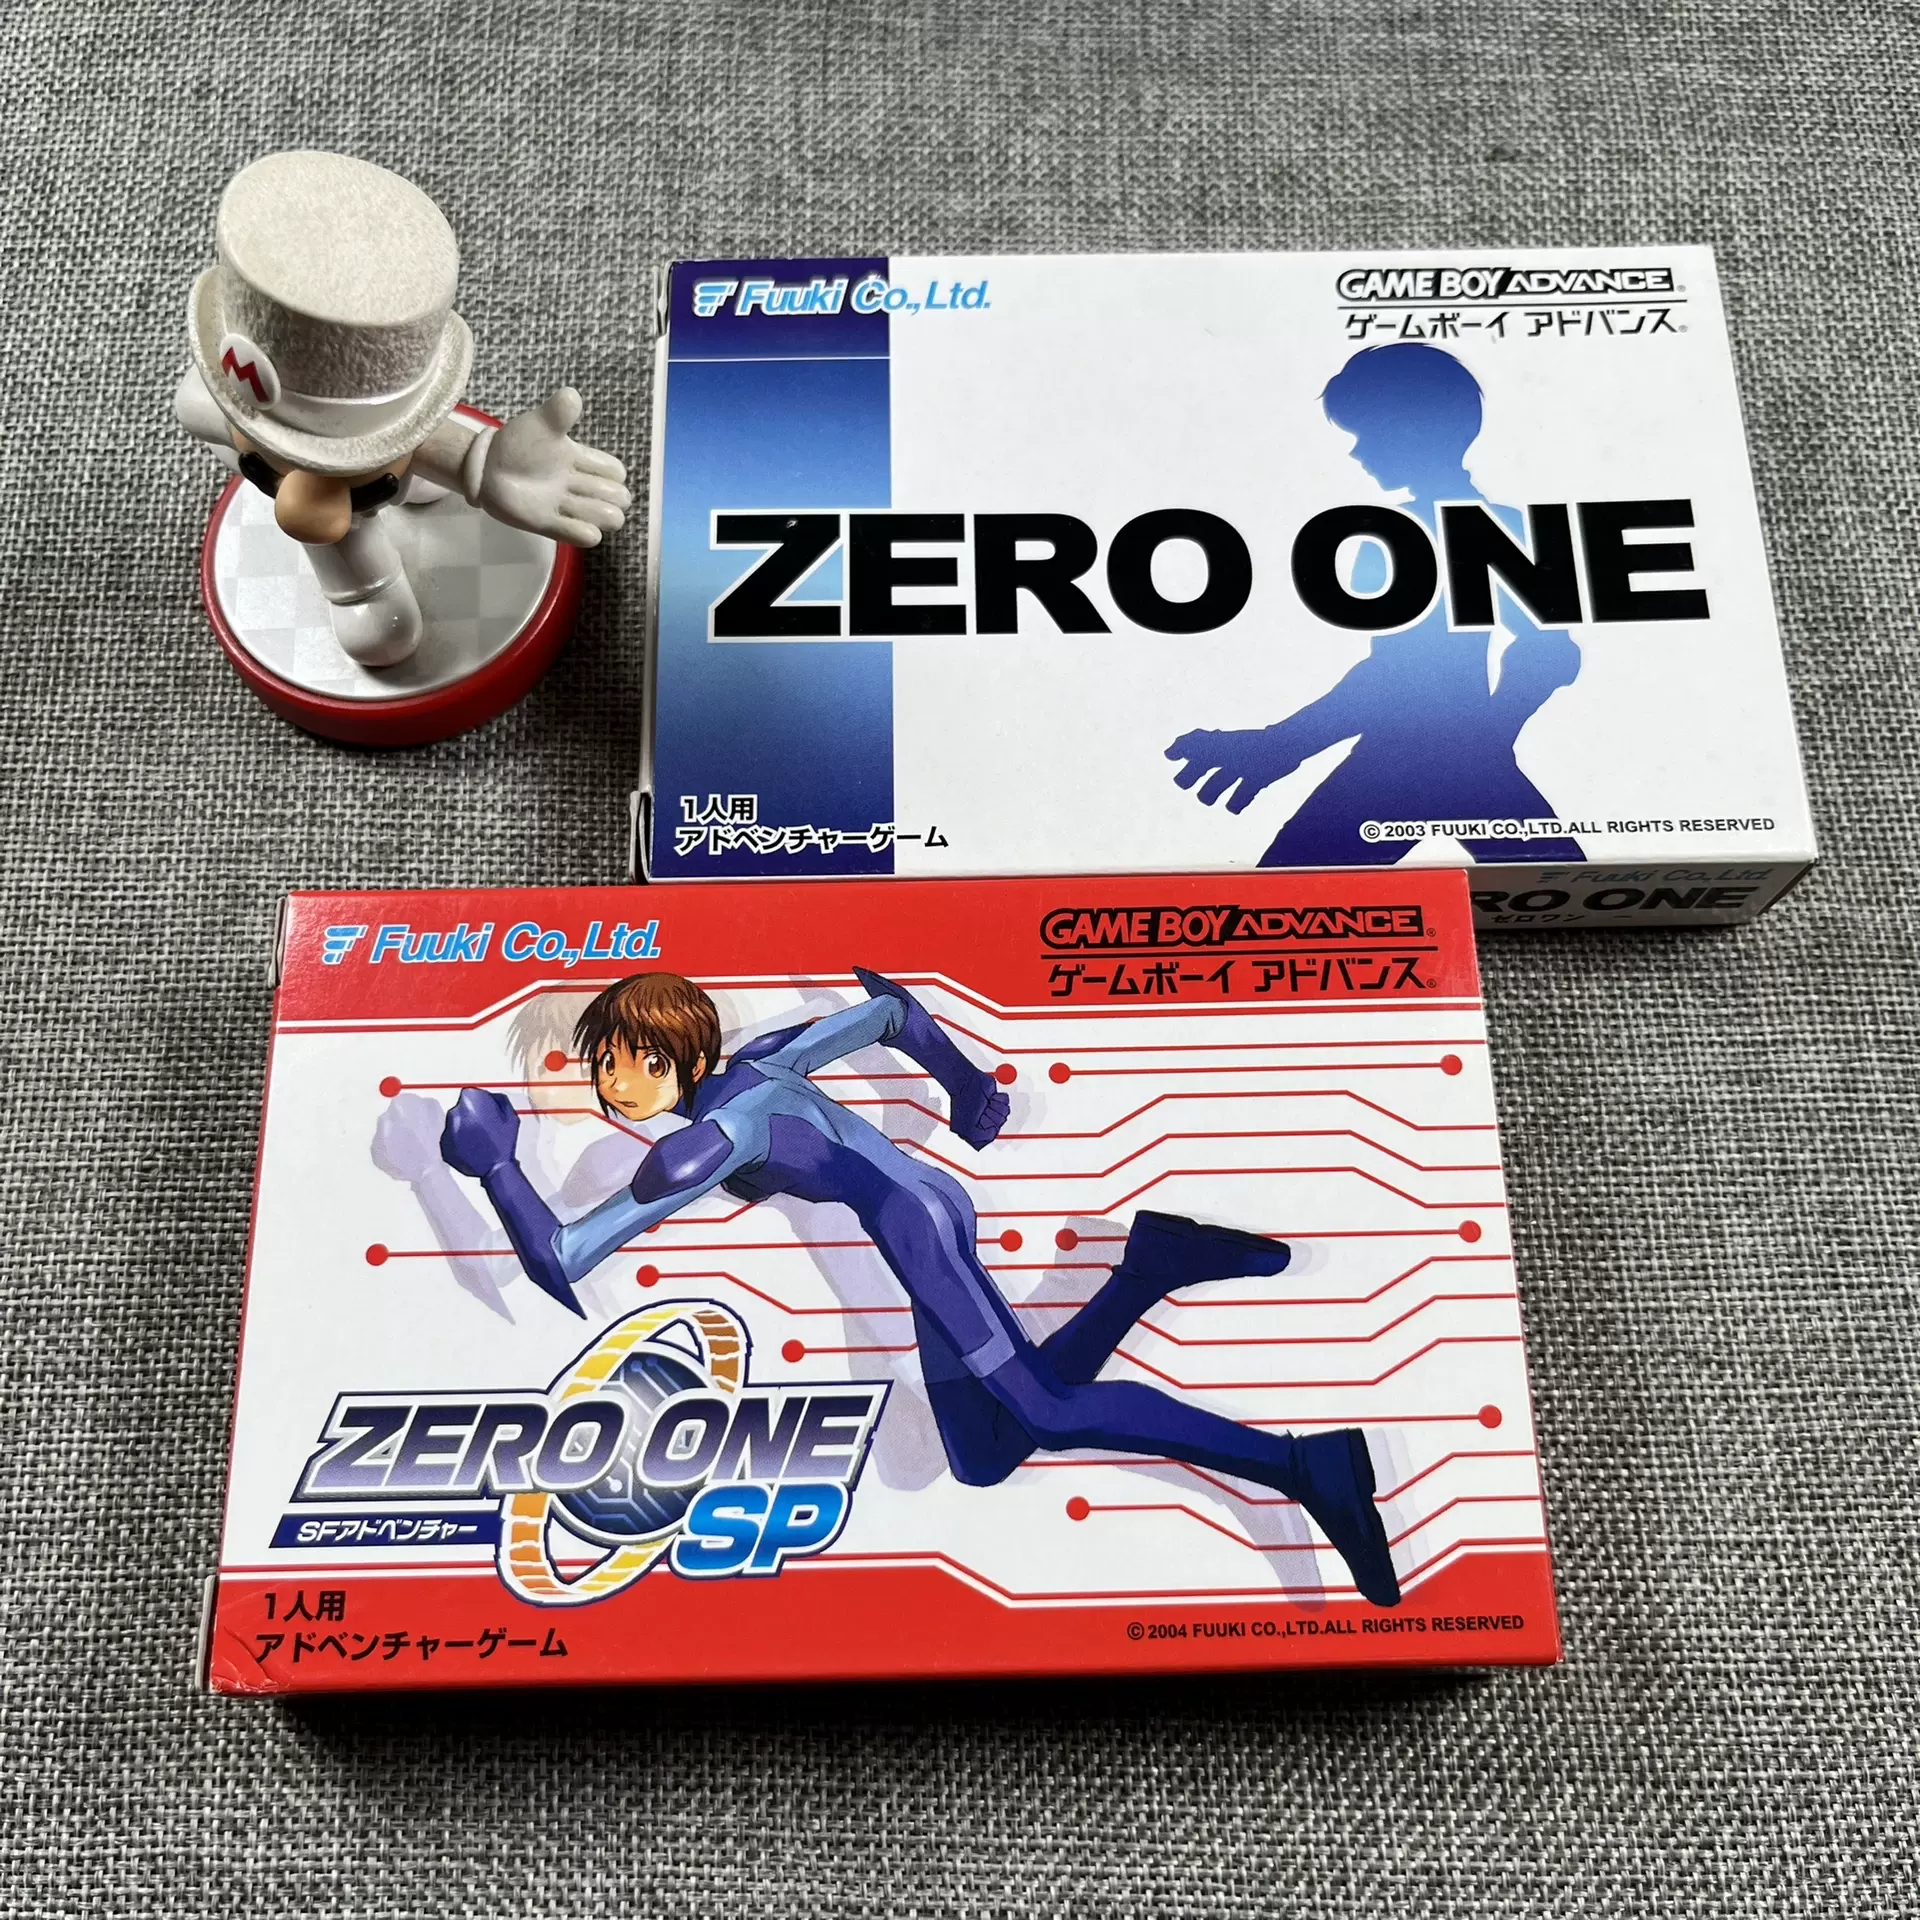 ZERO ONE SP ゲームボーイアドバンス - テレビゲーム